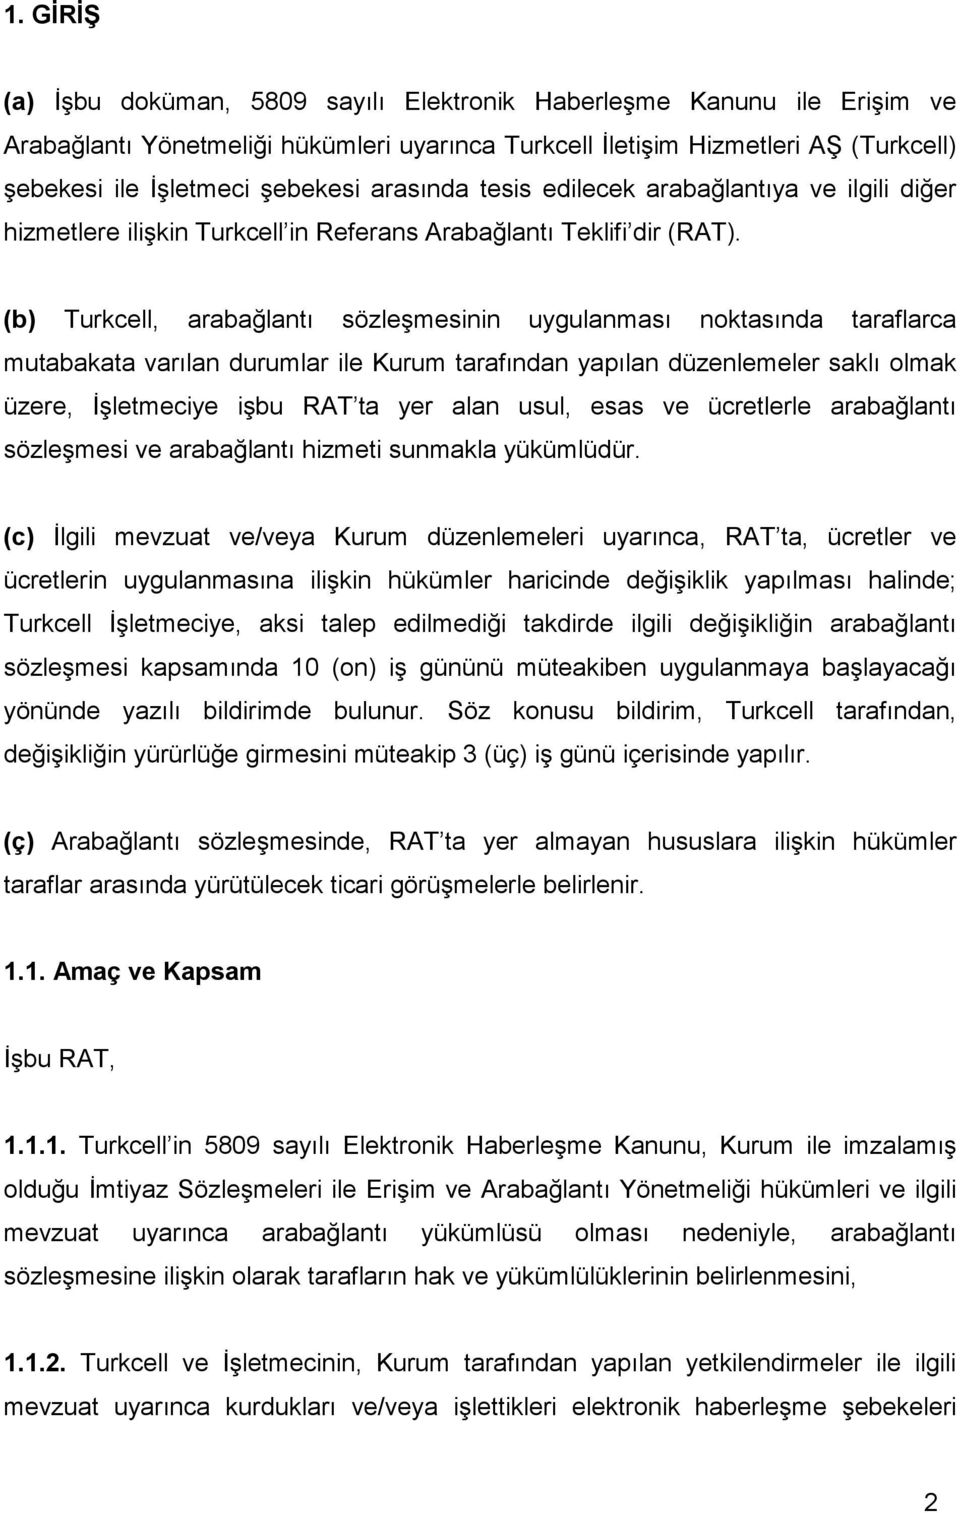 (b) Turkcell, arabağlantı sözleşmesinin uygulanması noktasında taraflarca mutabakata varılan durumlar ile Kurum tarafından yapılan düzenlemeler saklı olmak üzere, İşletmeciye işbu RAT ta yer alan